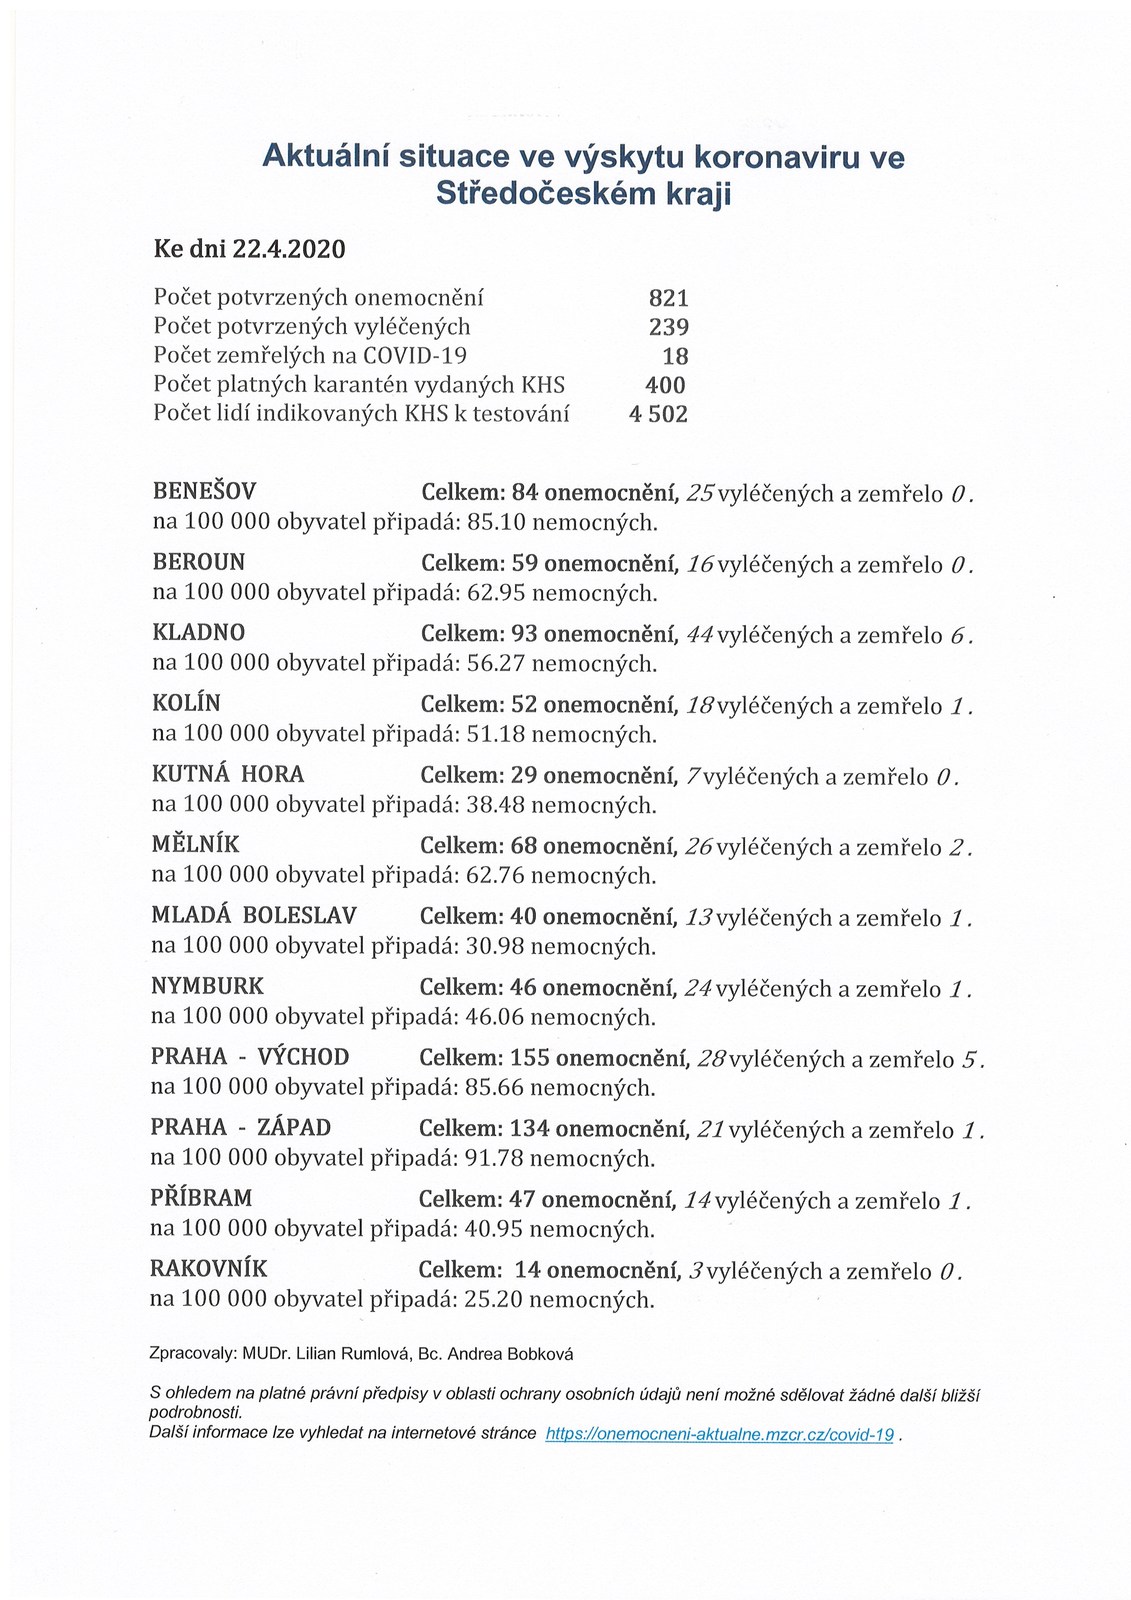 Aktuální informace ve výskytu koronaviru ve Stř.kraji 22.4.2020.jpg